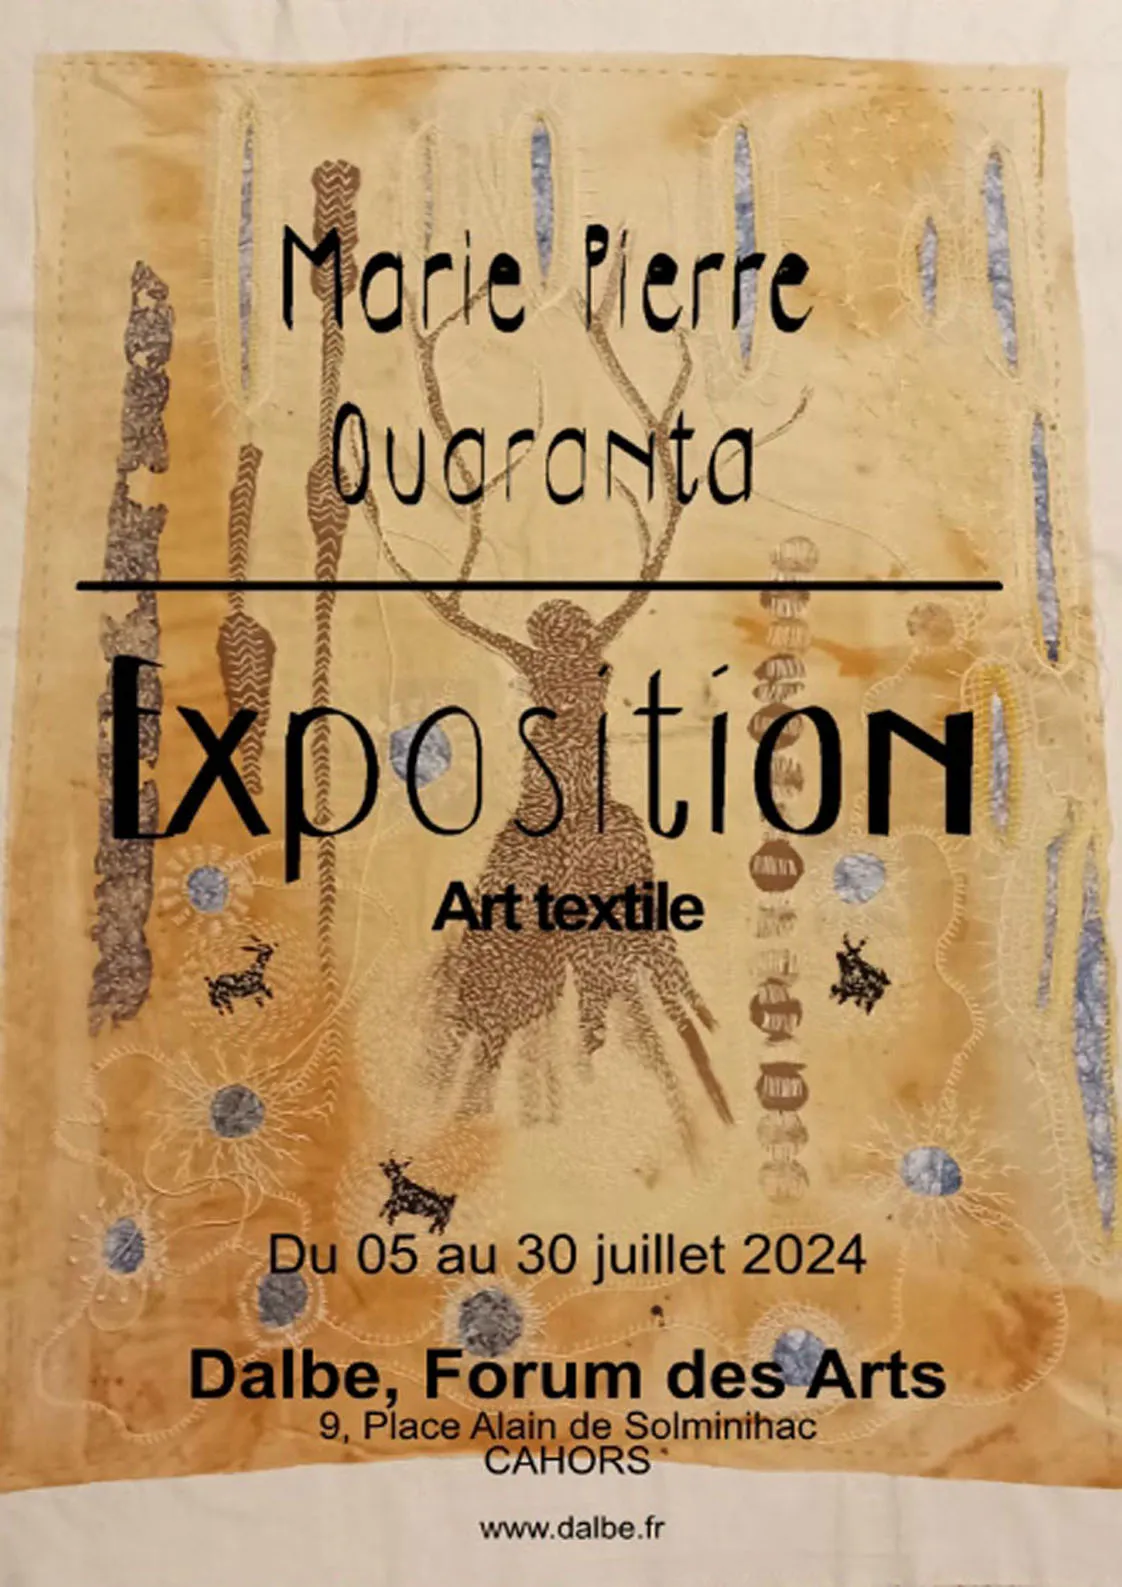 Image qui illustre: Exposition Art Textile, Marie Pierre Quaranta à Cahors - 1